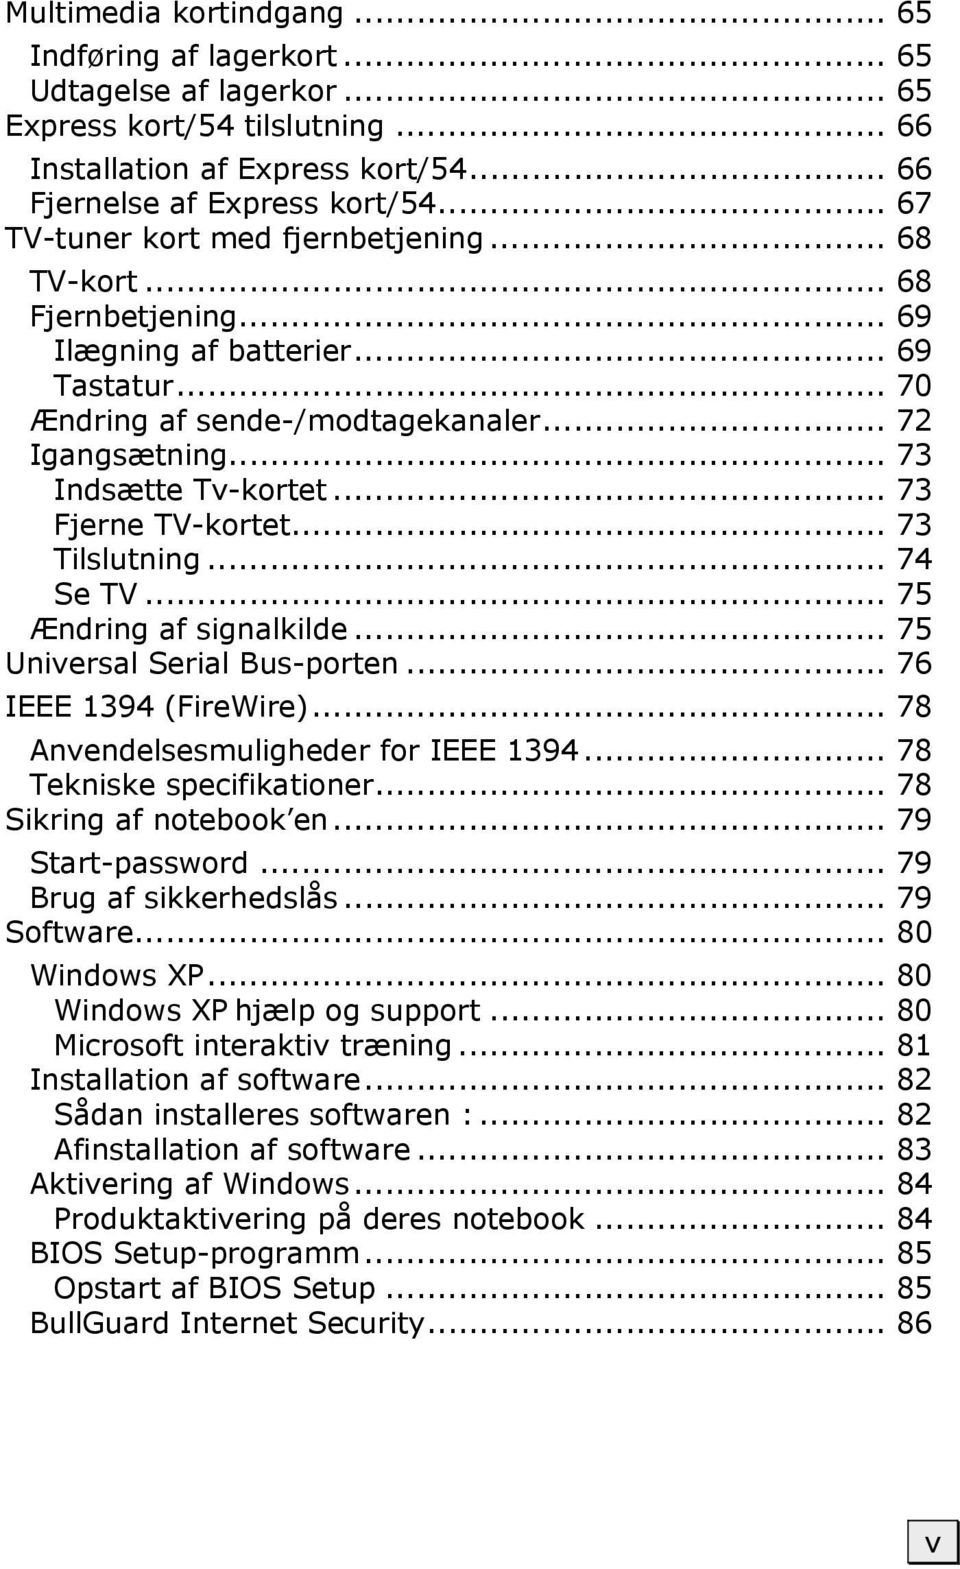 .. 73 Fjerne TV-kortet... 73 Tilslutning... 74 Se TV... 75 Ændring af signalkilde... 75 Universal Serial Bus-porten... 76 IEEE 1394 (FireWire)... 78 Anvendelsesmuligheder for IEEE 1394.